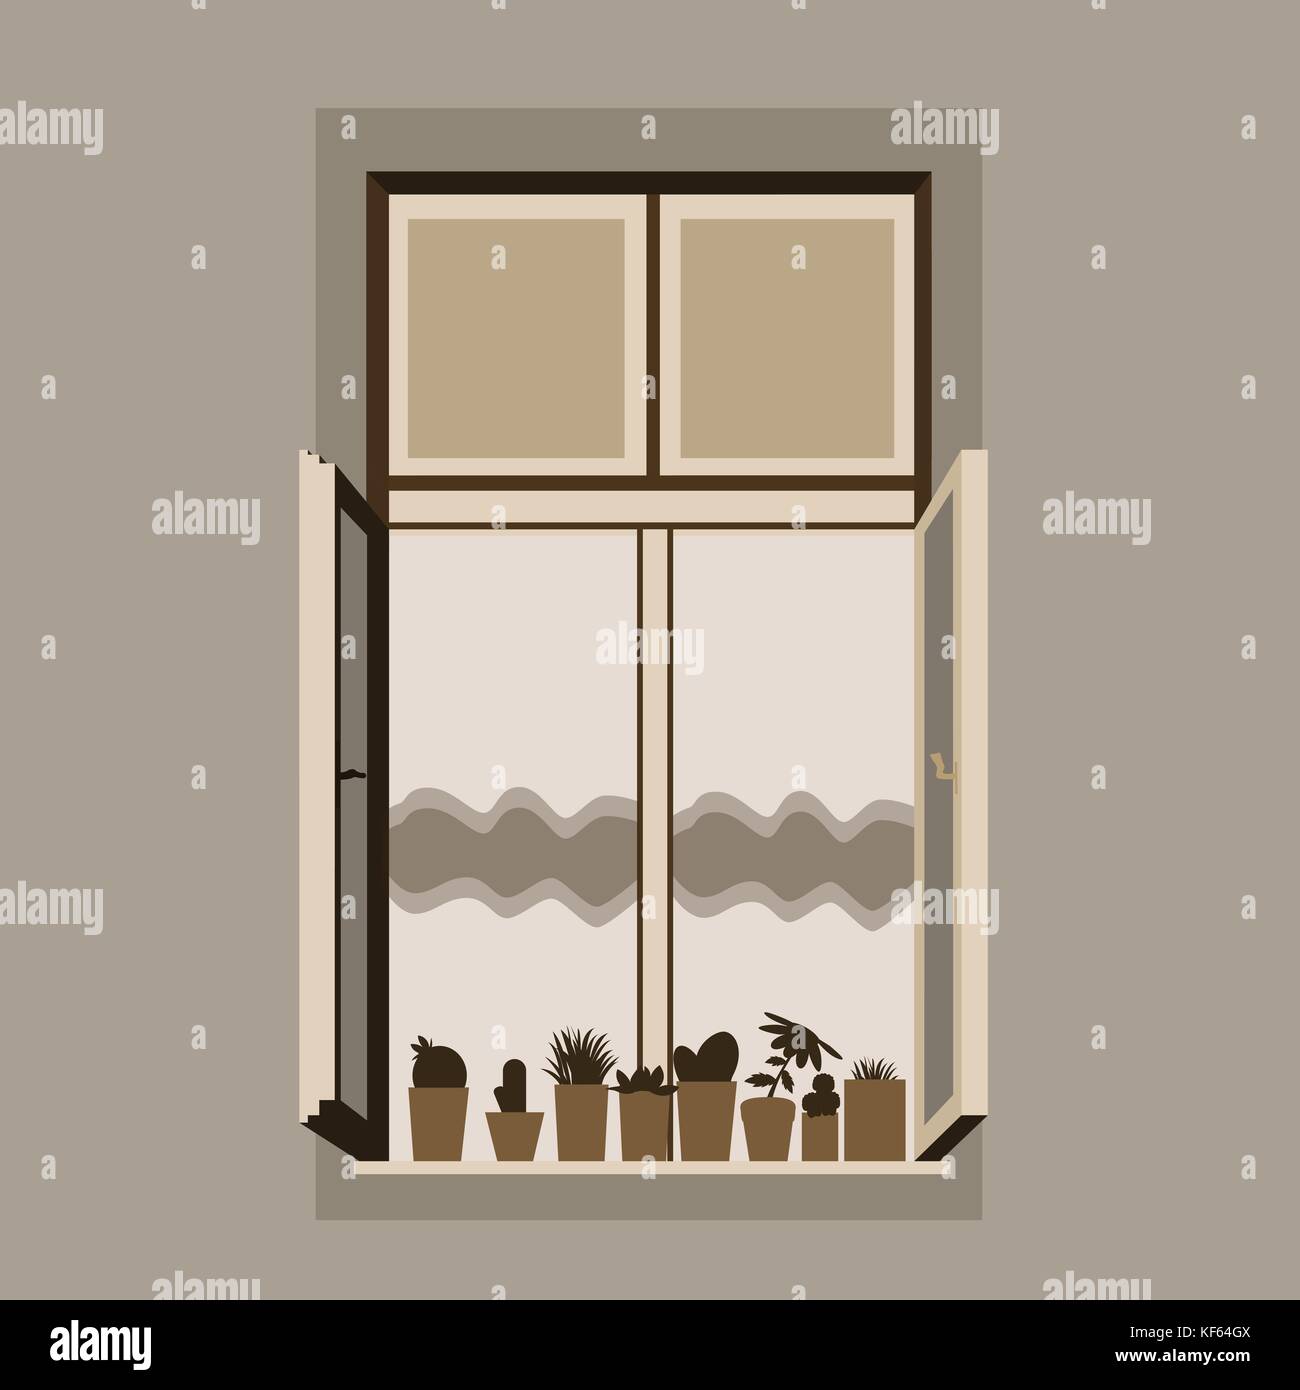 Vektor-Illustration eines offenen Holzfensters mit Vorhang und Blumentöpfe mit Pflanzen Stock Vektor